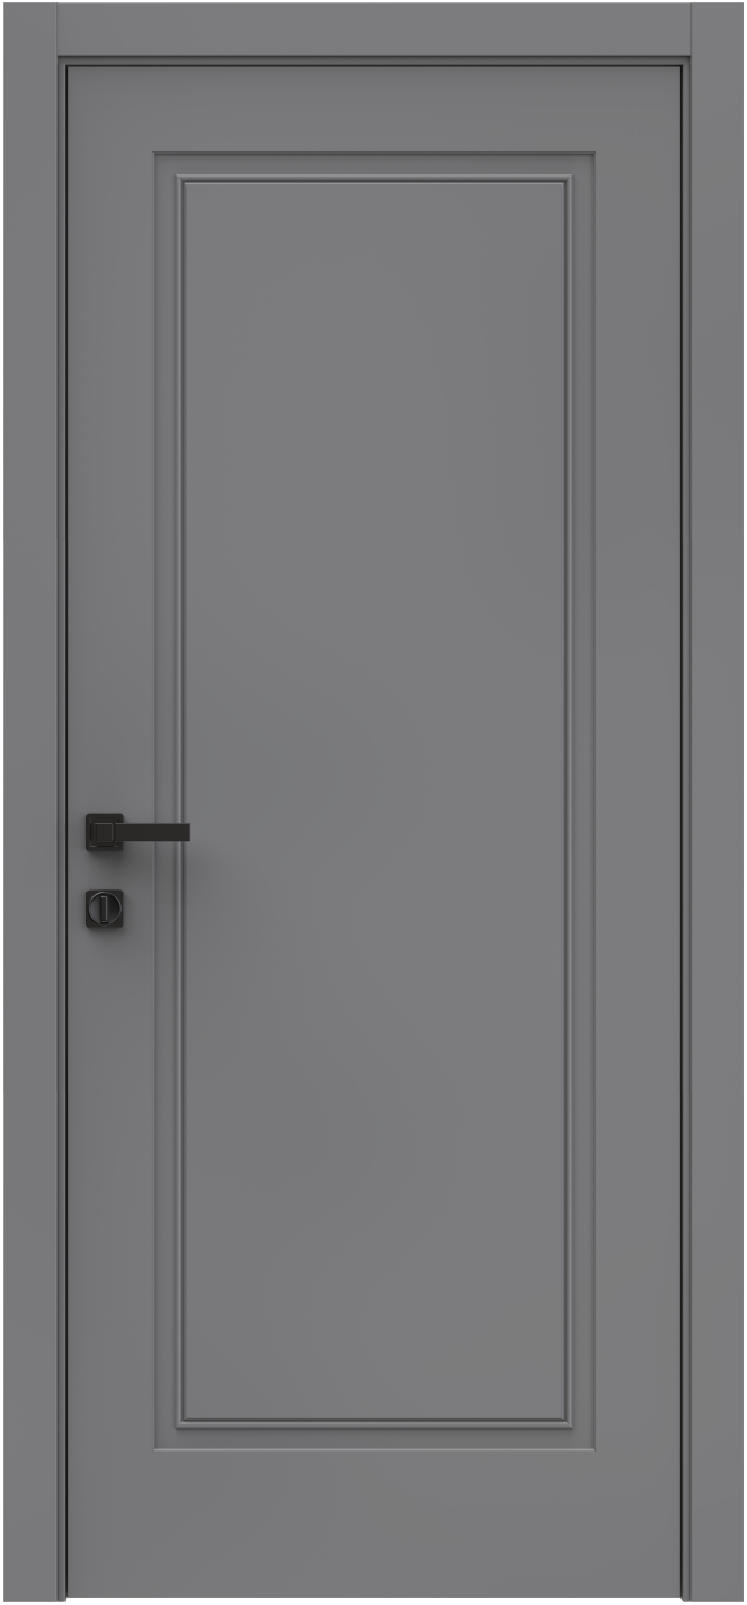 Questdoors Межкомнатная дверь QES1, арт. 26316 - фото №1